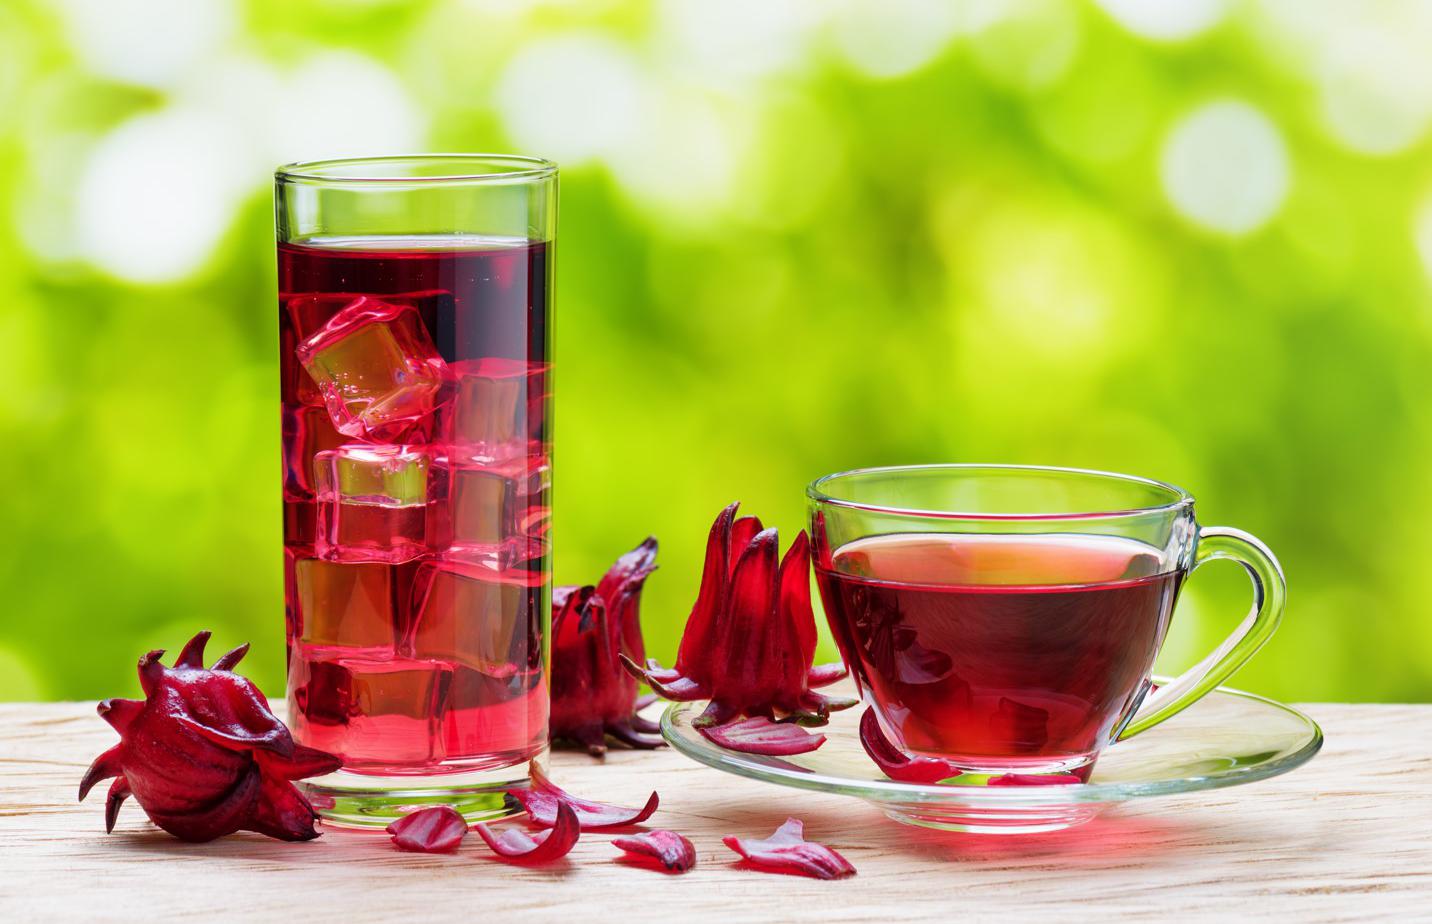 Benefits of hibiscus tea: 3 properties